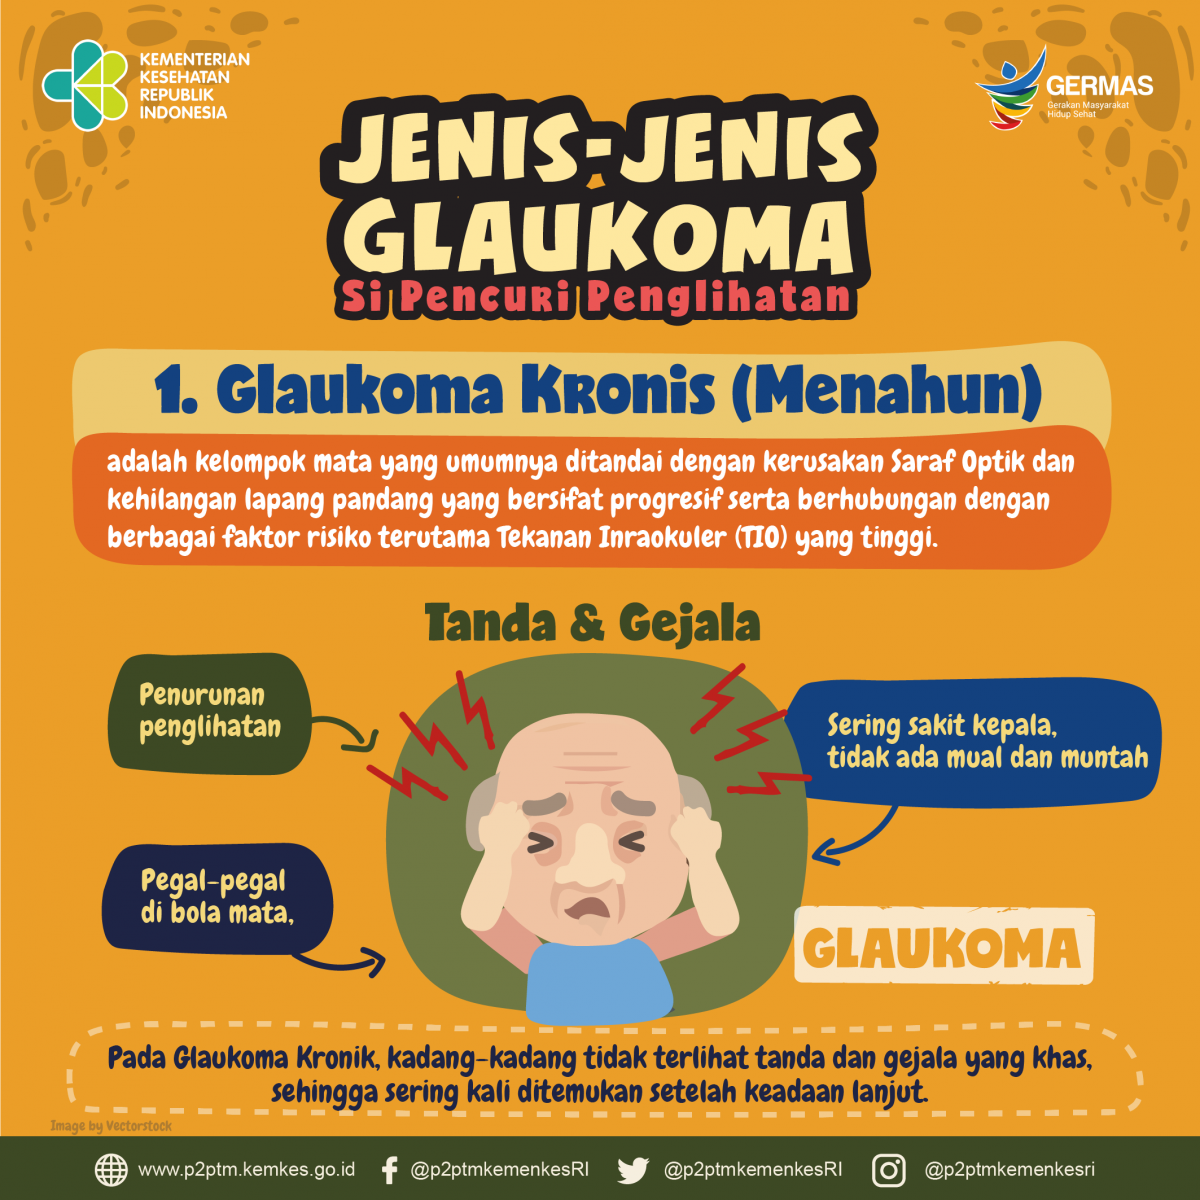 Yuk, simak apa itu glaukoma kronis dan apa saja gejalanya?